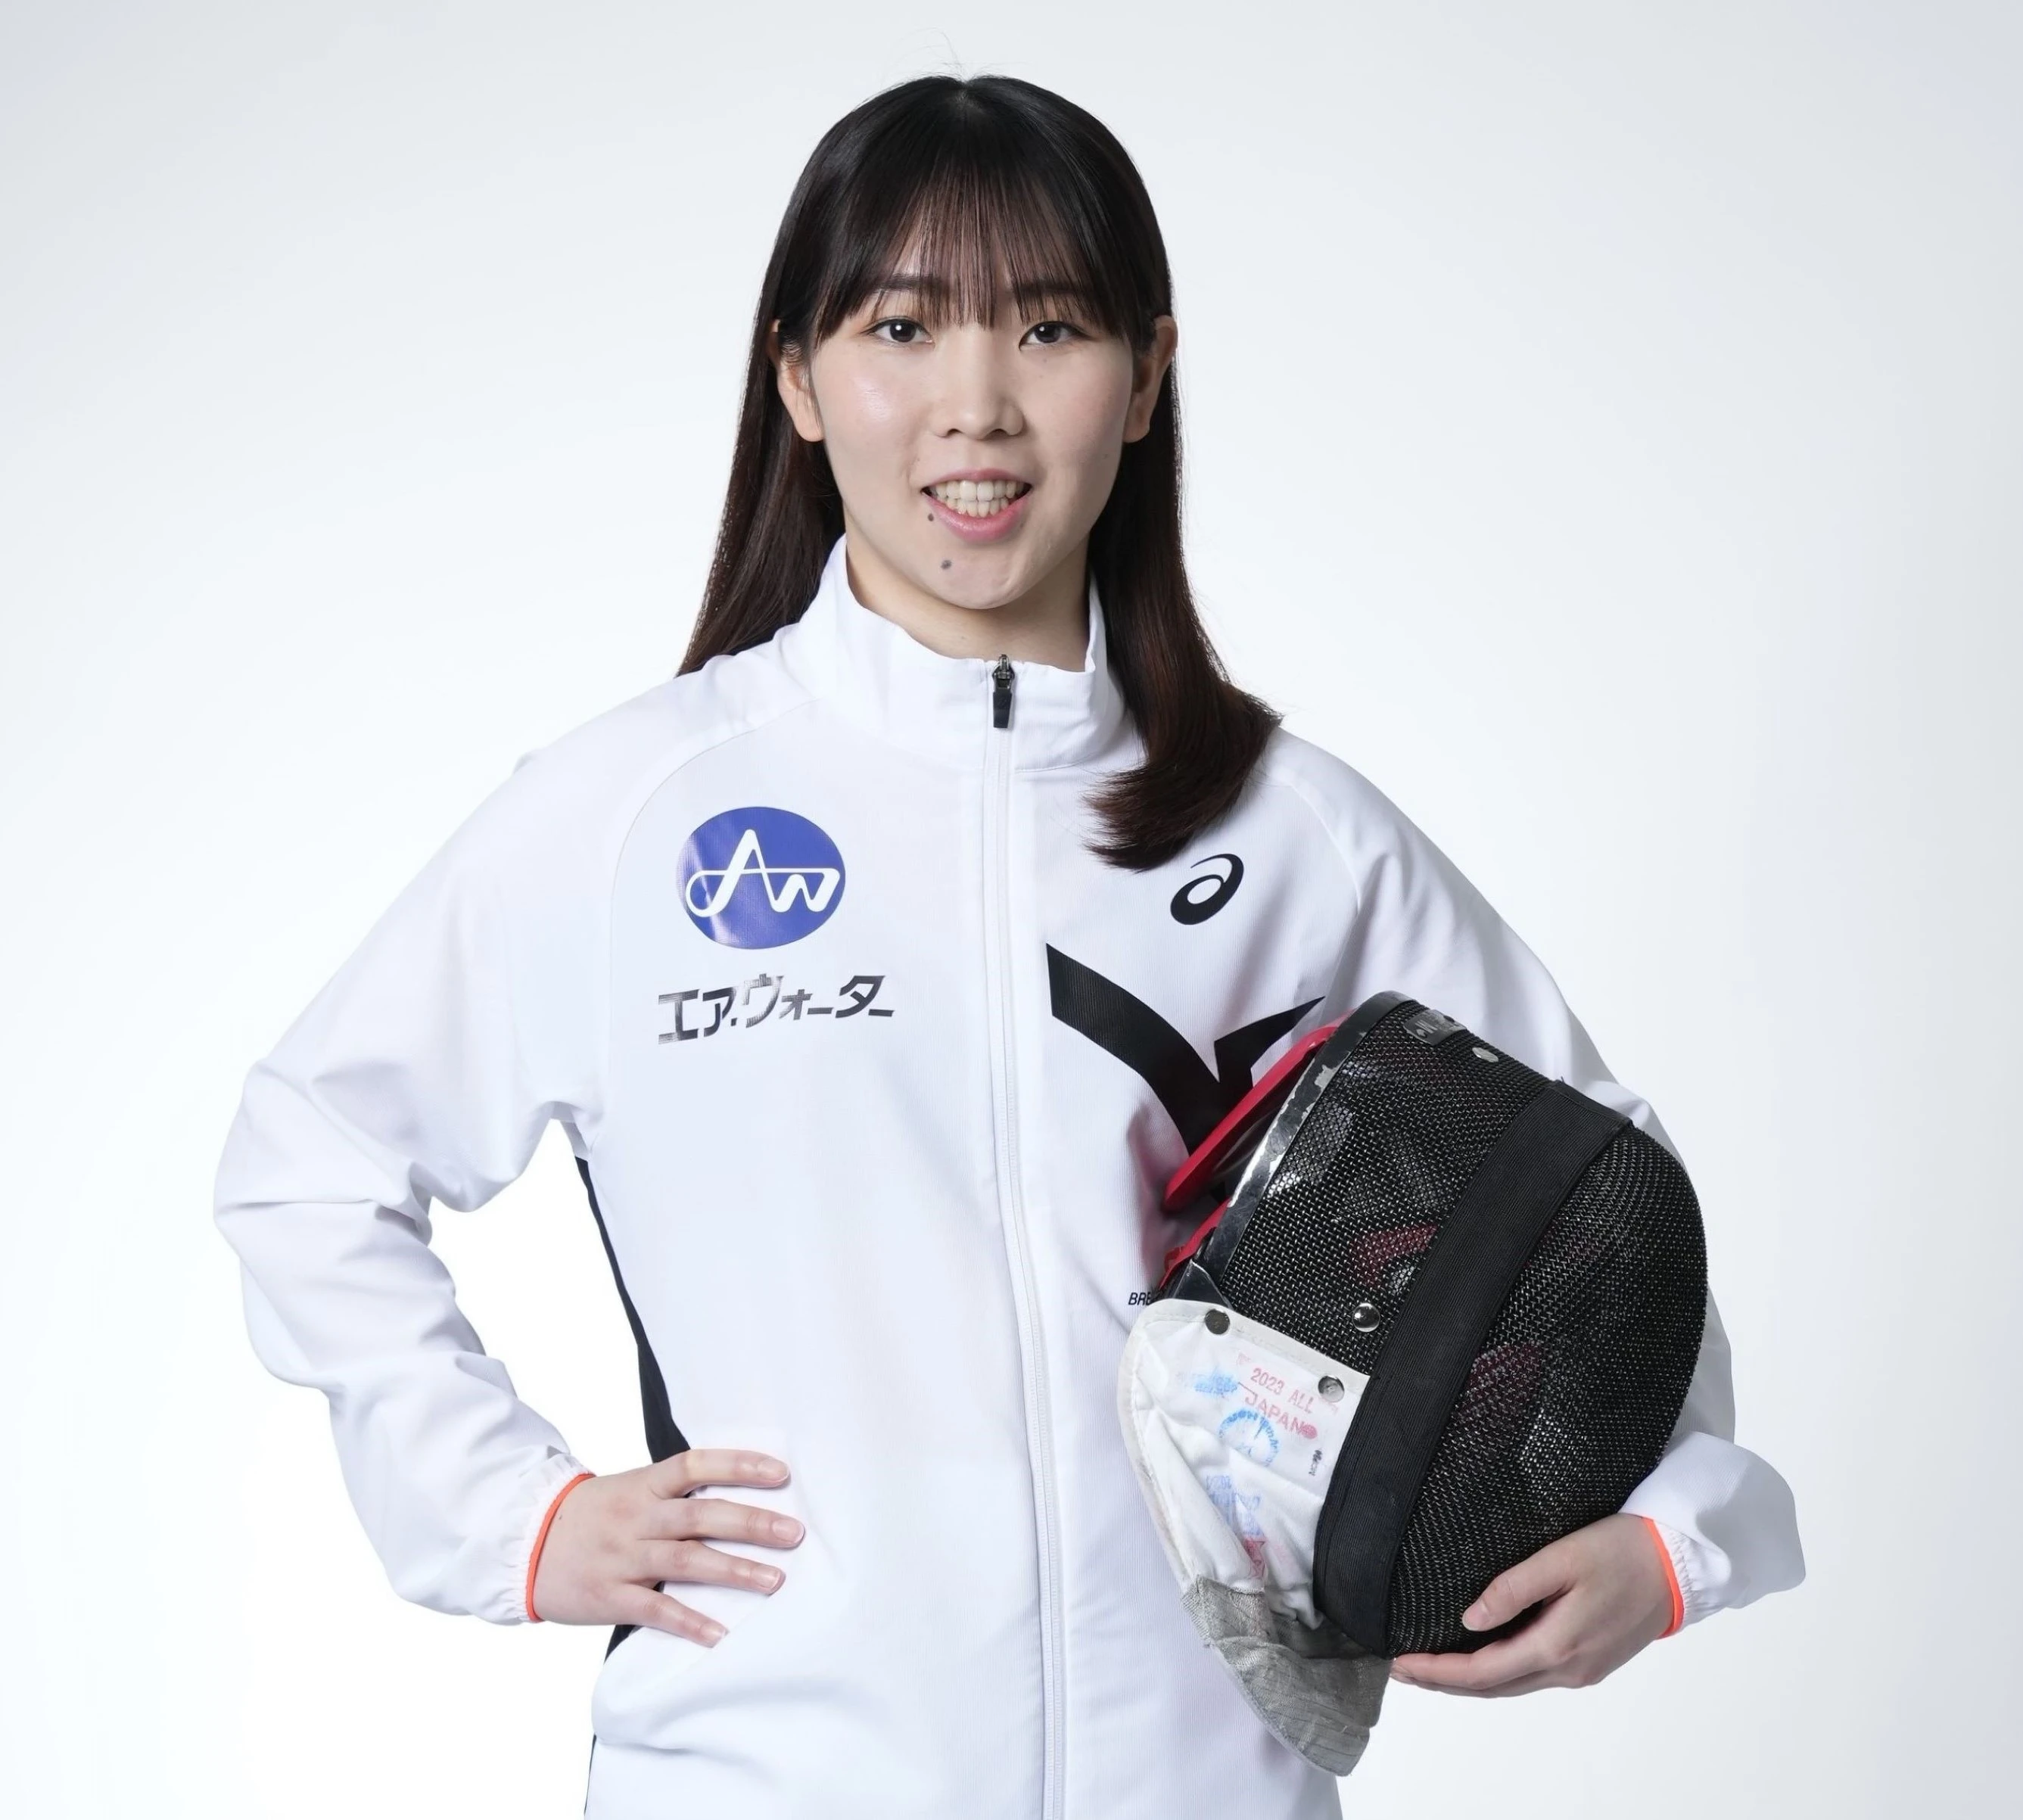 フェンシング女子フルーレ日本代表
上野 優佳　UENO YUKA